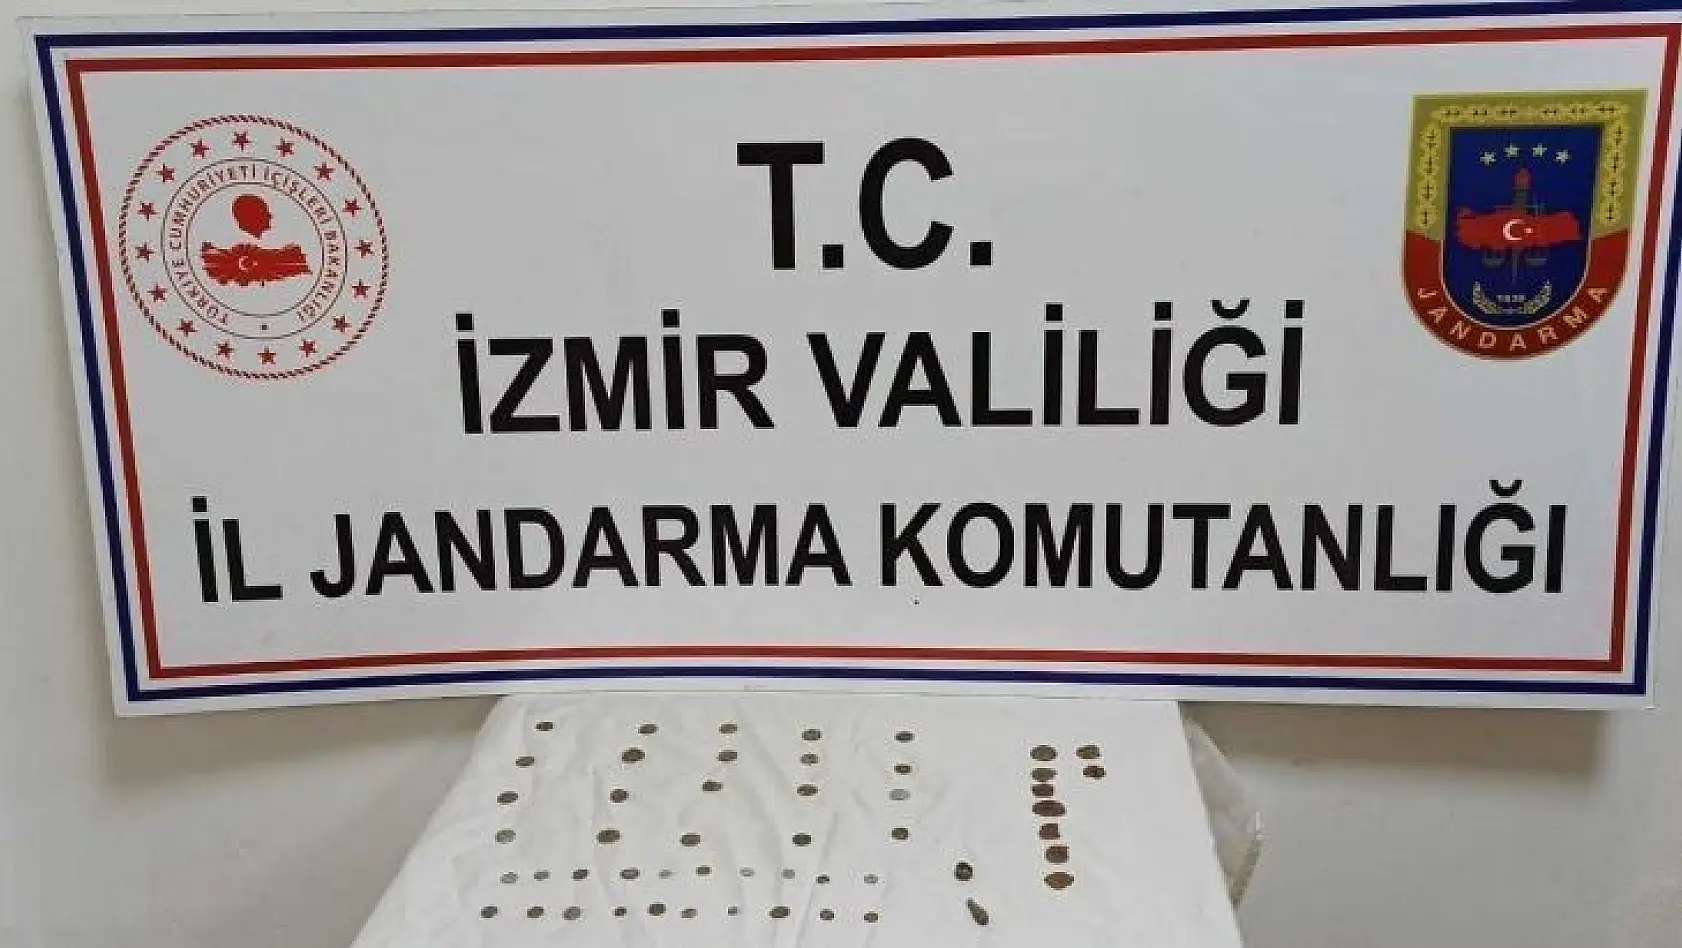 İzmir'de jandarma 51 adet tarihi eser ele geçirdi